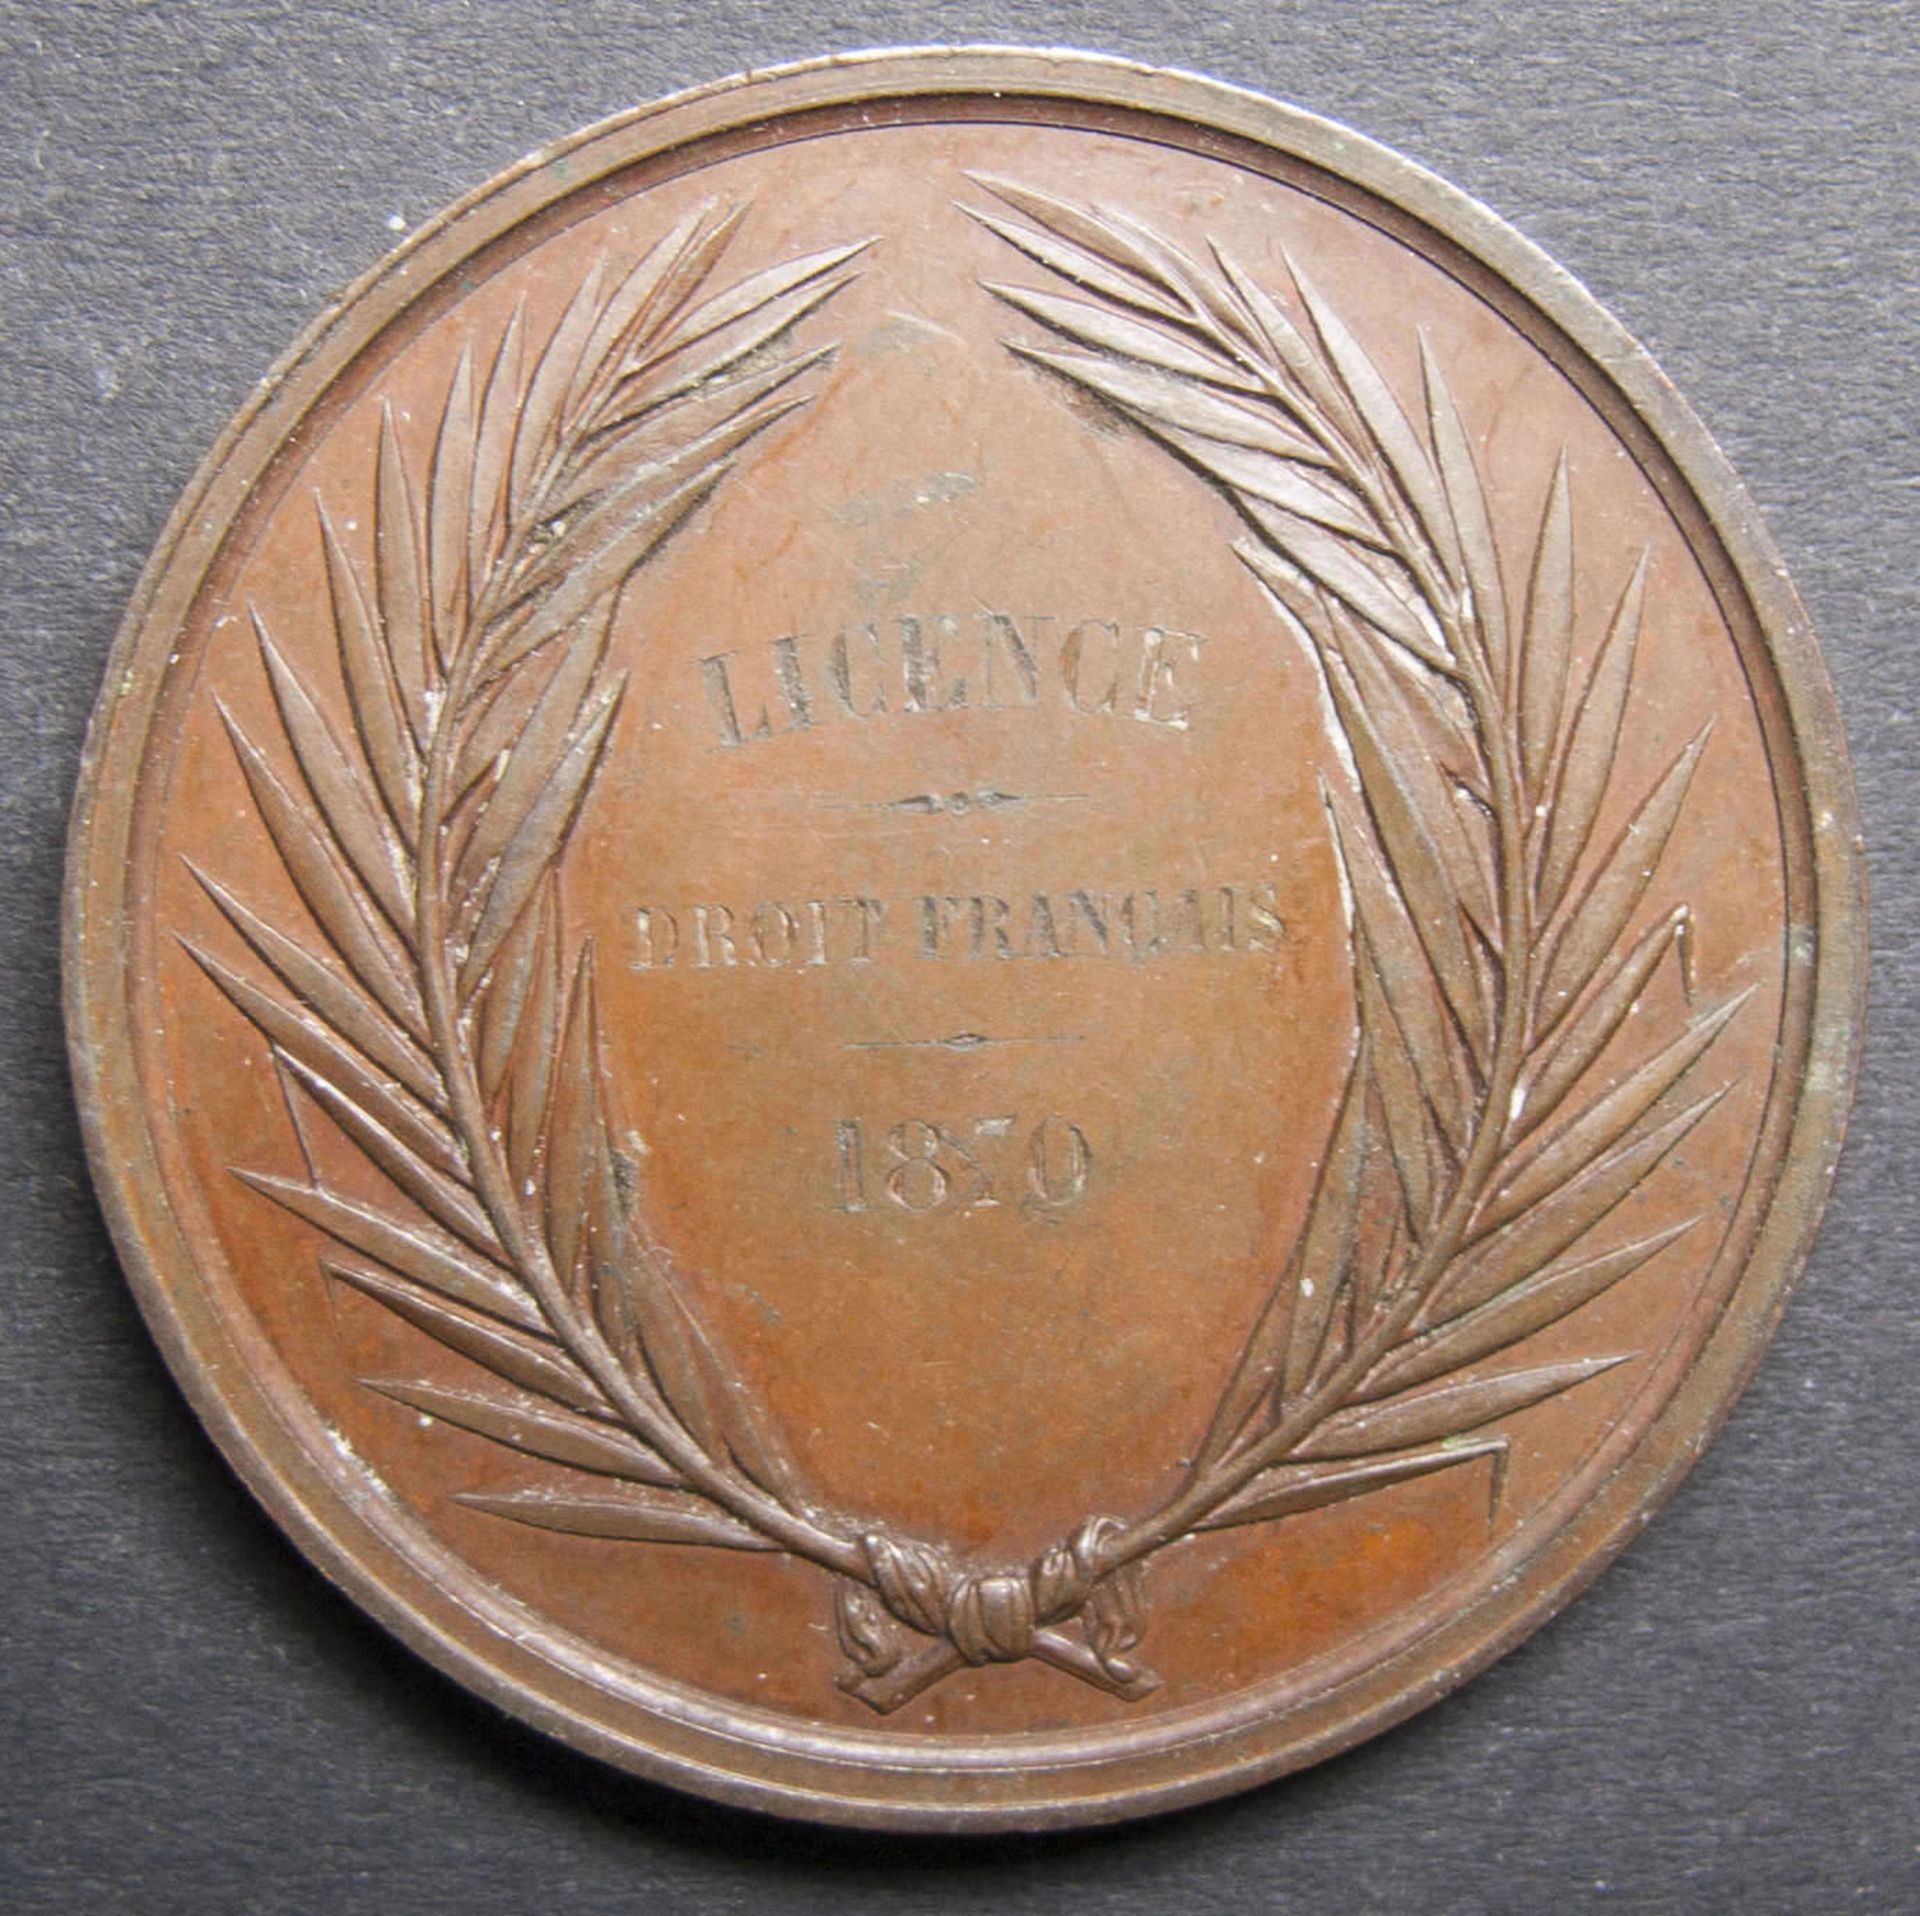 Medaille Licence de Droit francais.1870. Faculte de droit A´Aix. Kupfer. - Bild 2 aus 2